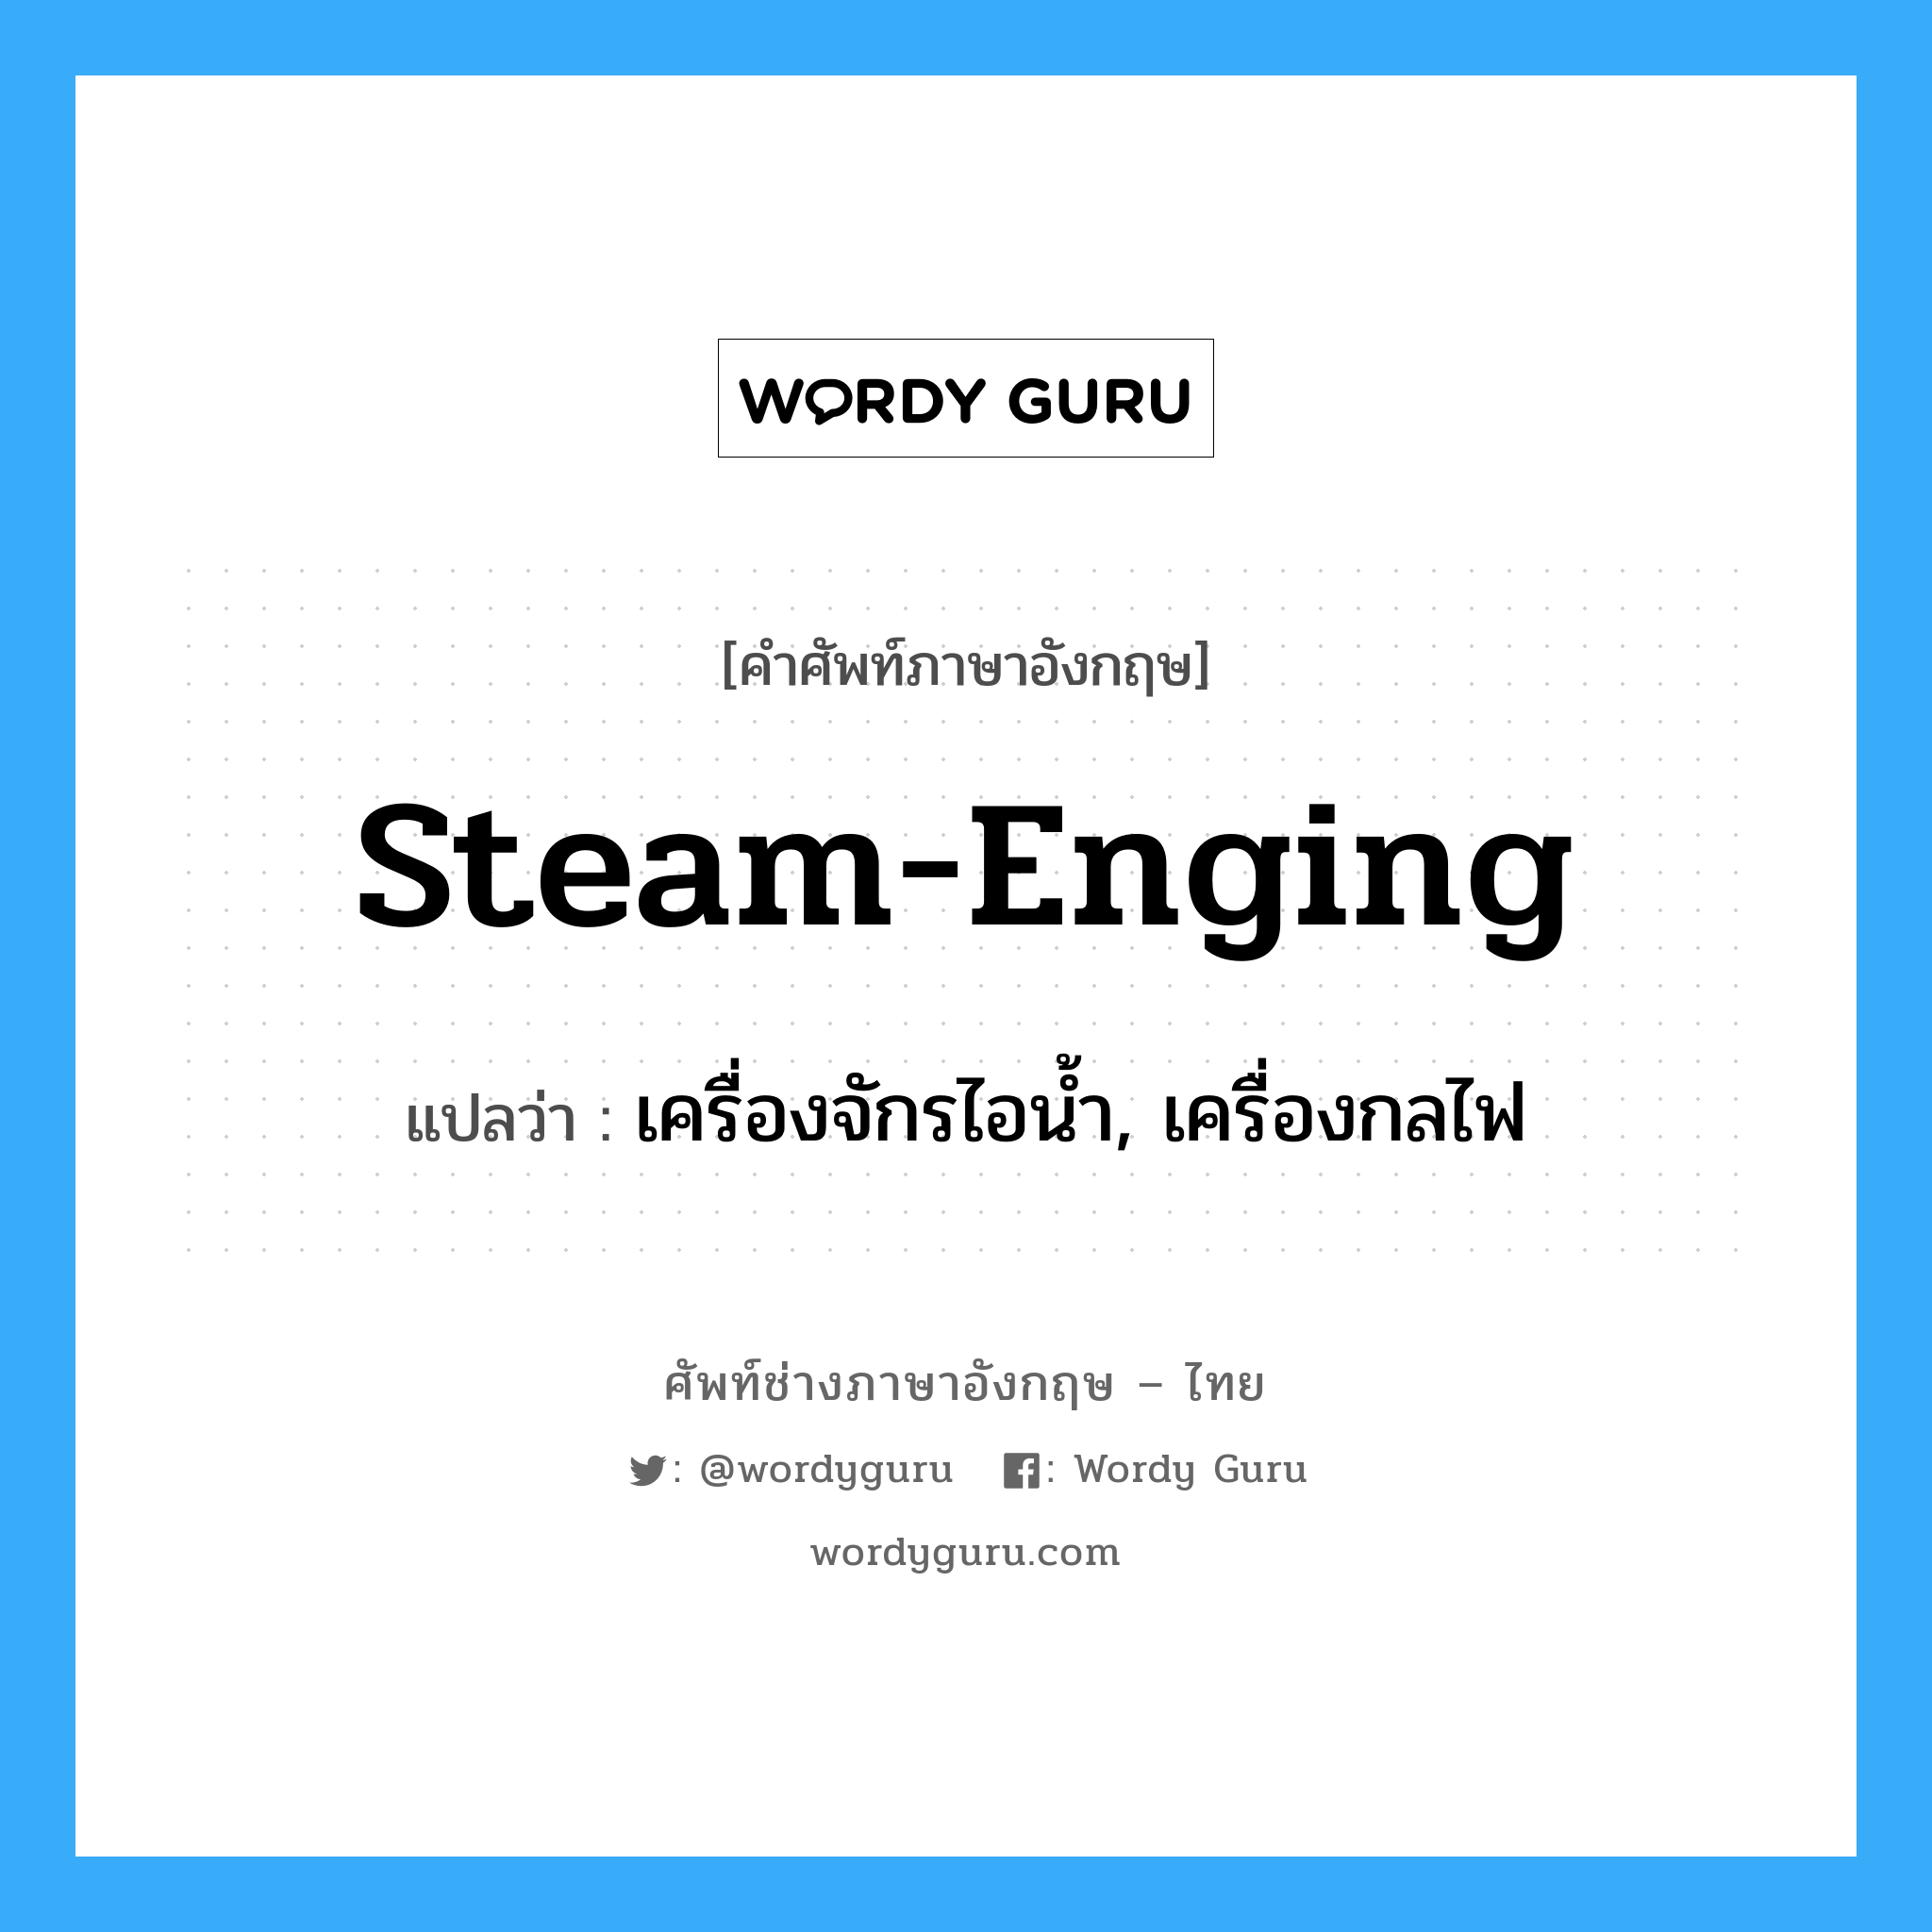 steam-enging แปลว่า?, คำศัพท์ช่างภาษาอังกฤษ - ไทย steam-enging คำศัพท์ภาษาอังกฤษ steam-enging แปลว่า เครื่องจักรไอน้ำ, เครื่องกลไฟ